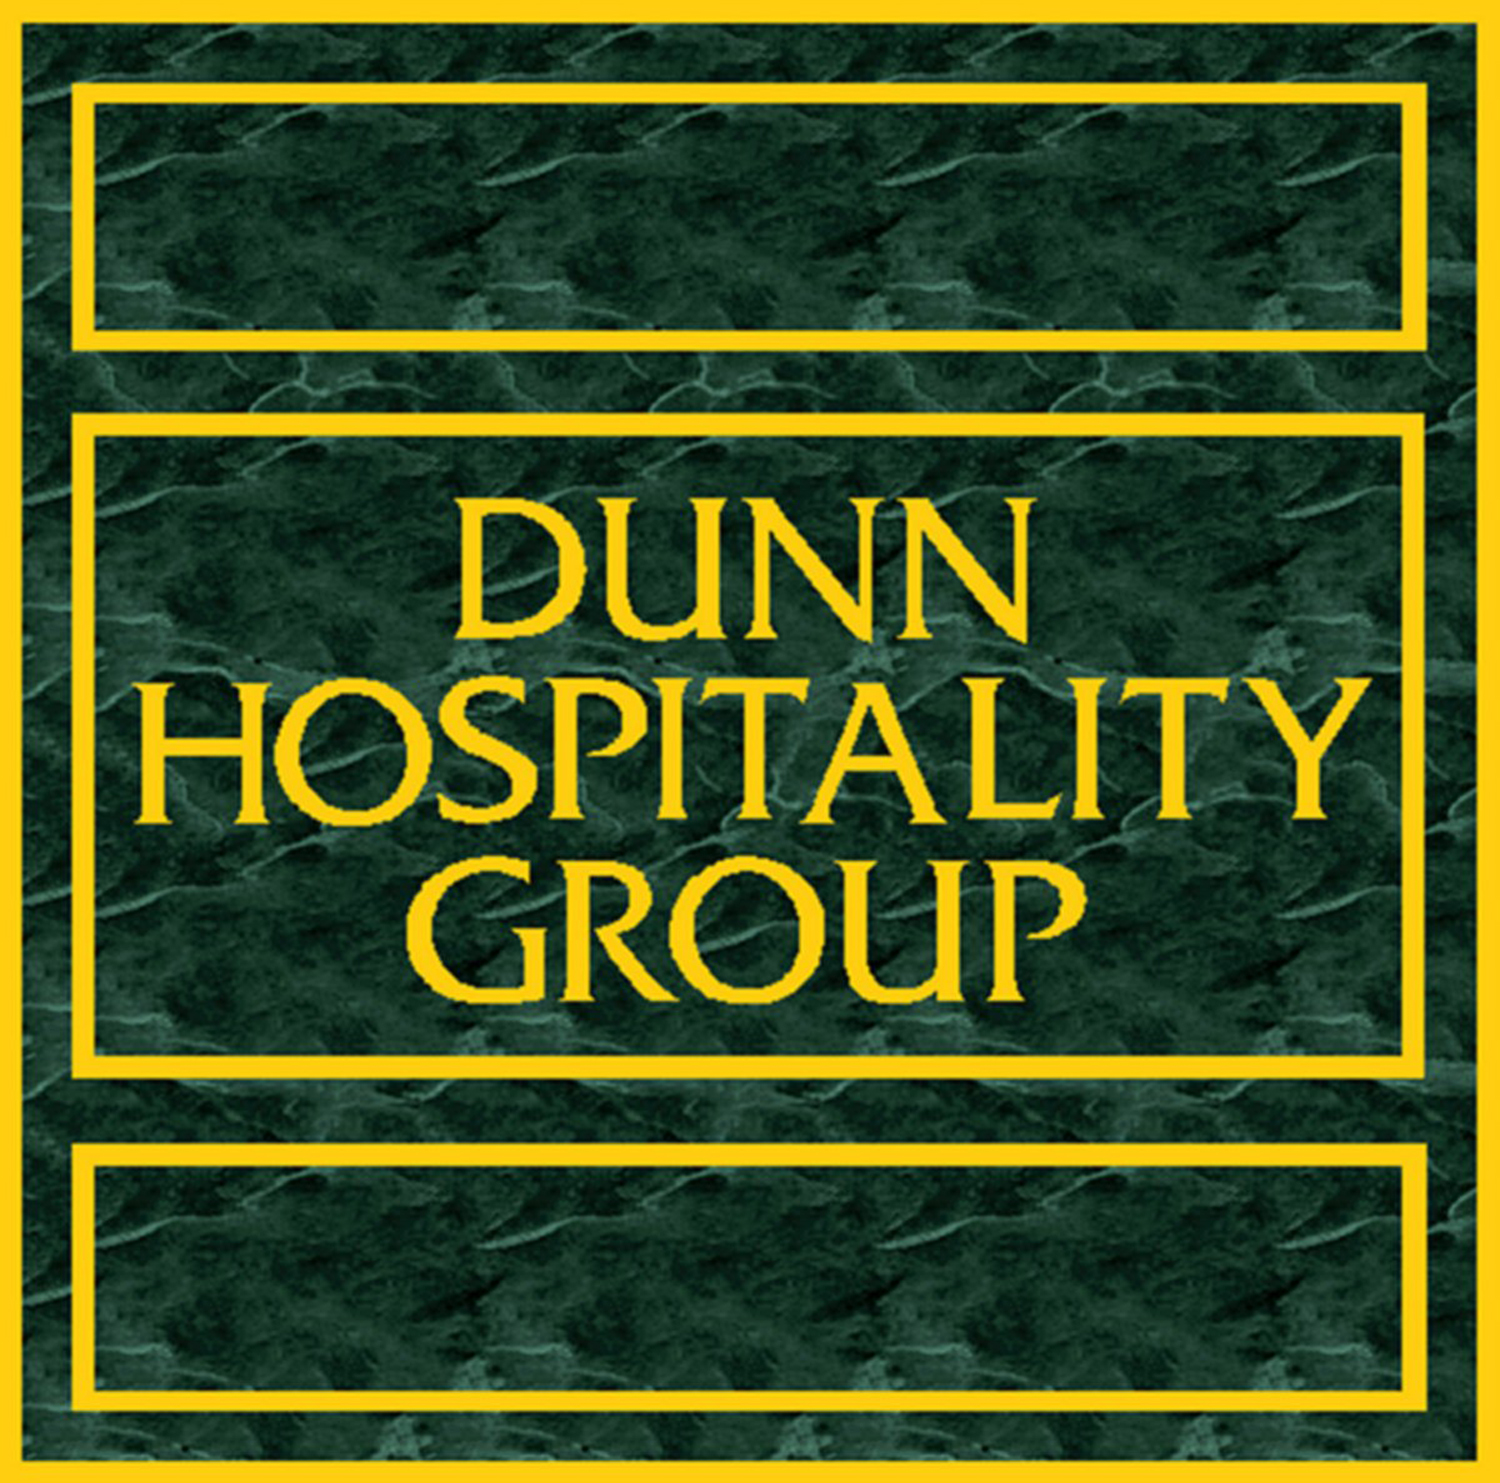 Dunn Hospitality Group